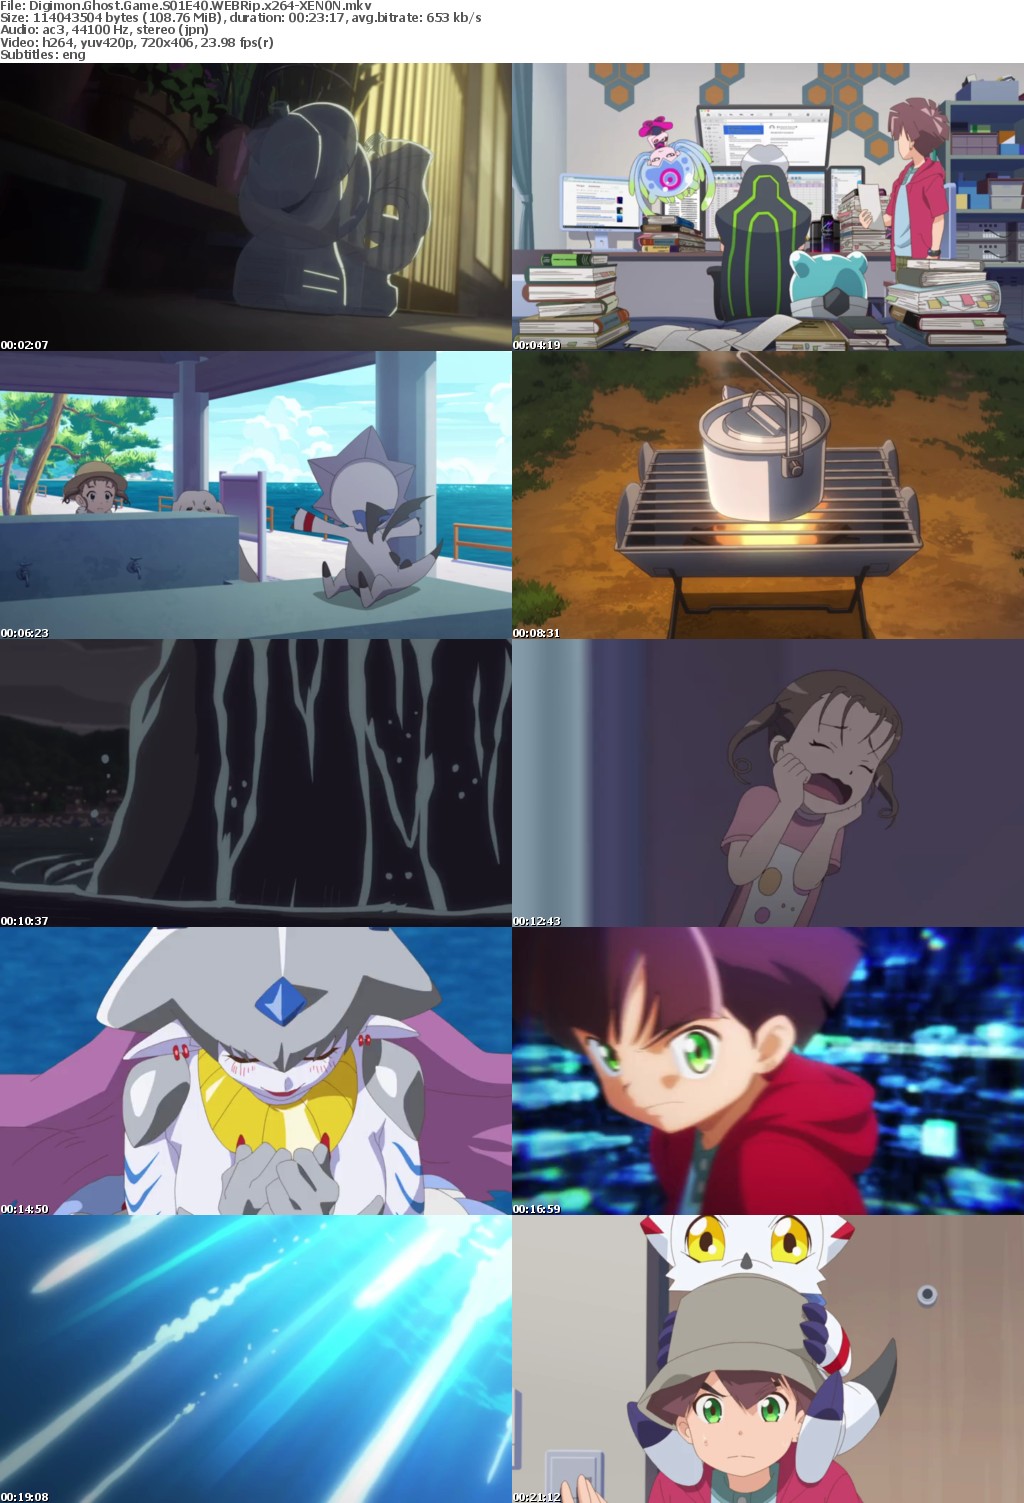 Digimon Ghost Game S01E40 WEBRip x264-XEN0N